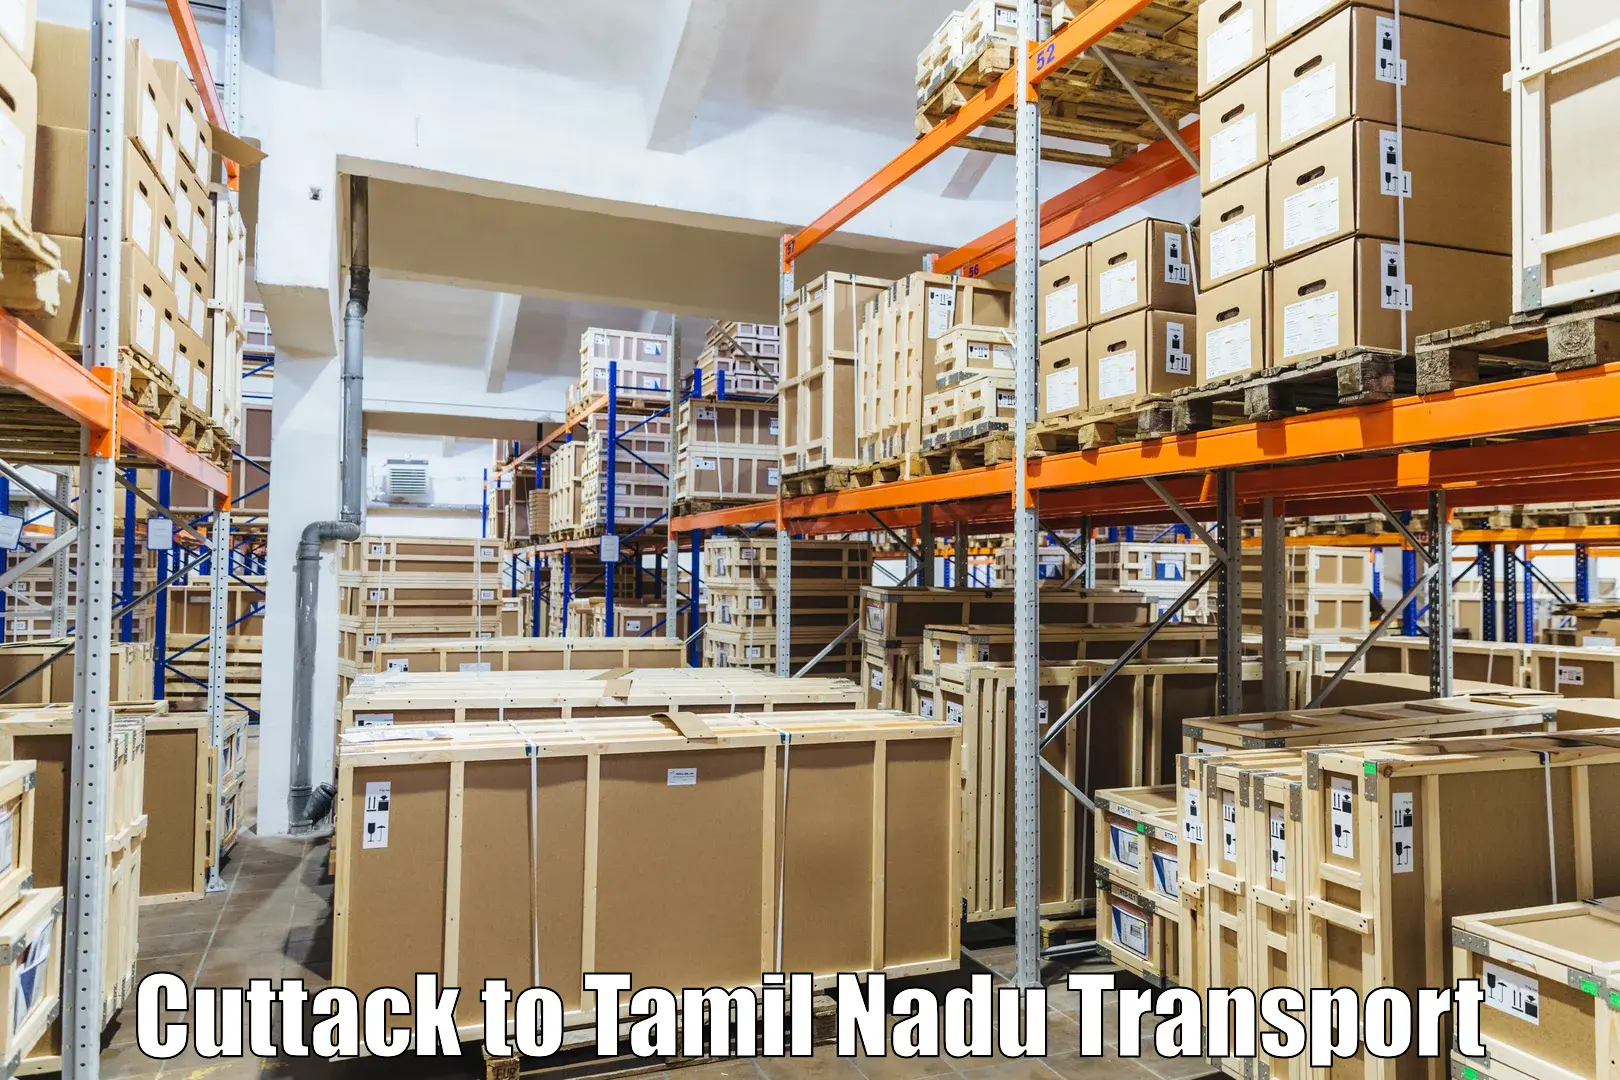 Furniture transport service Cuttack to Palladam